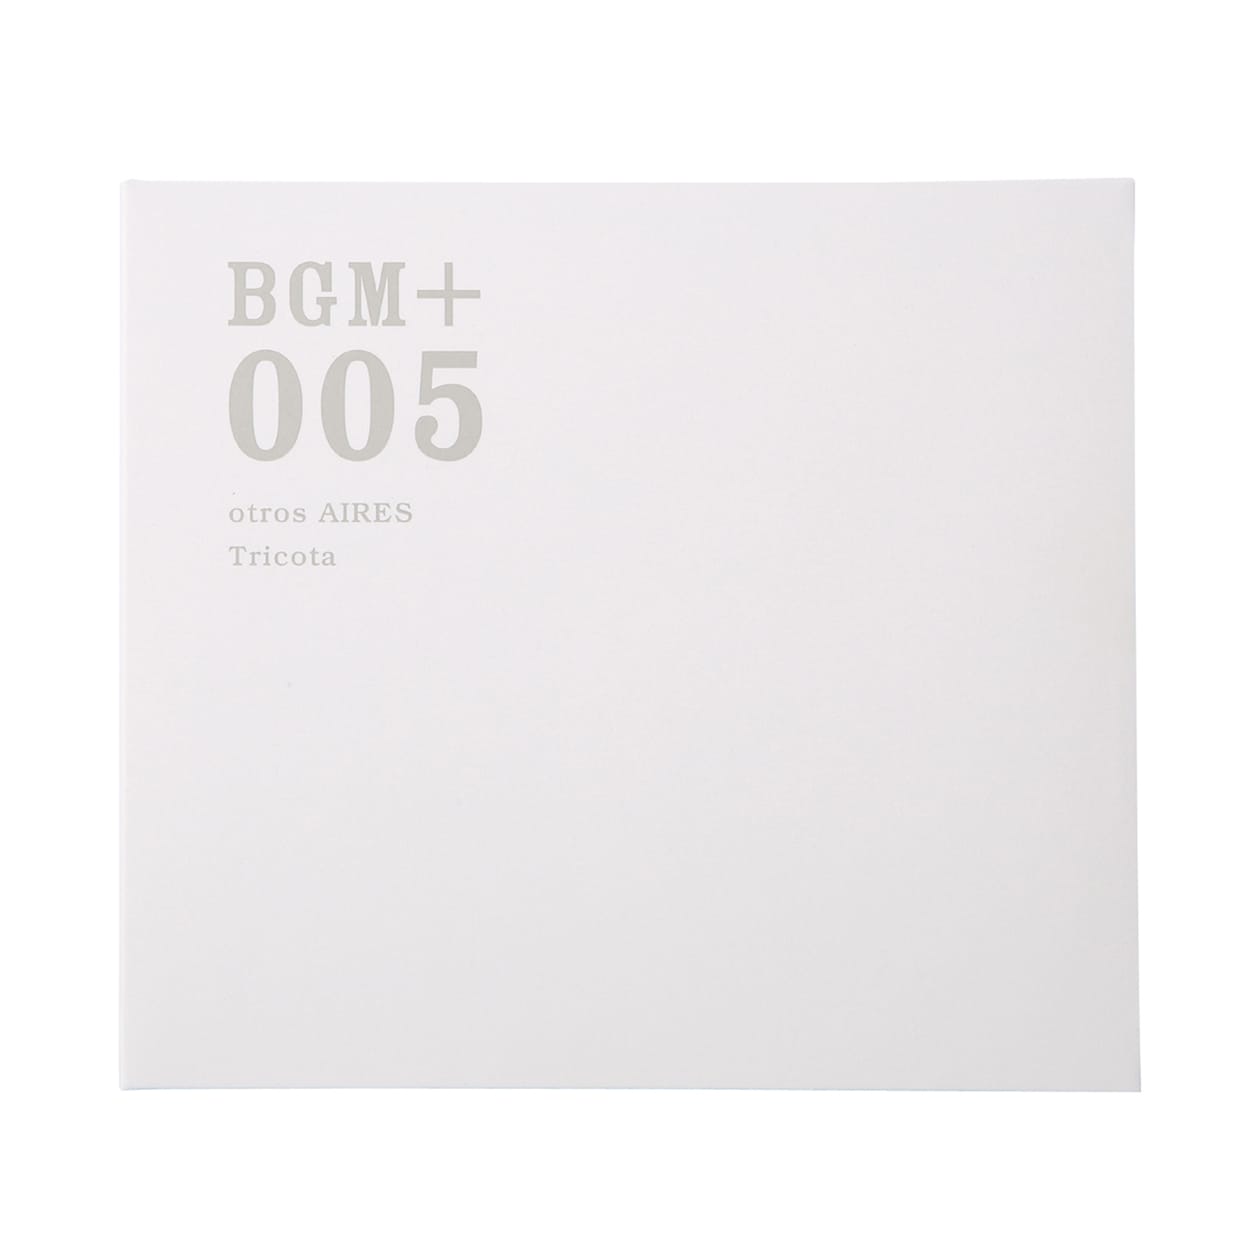 무인양품 일본 CD 음악 BGM +005 OTROS AIRES